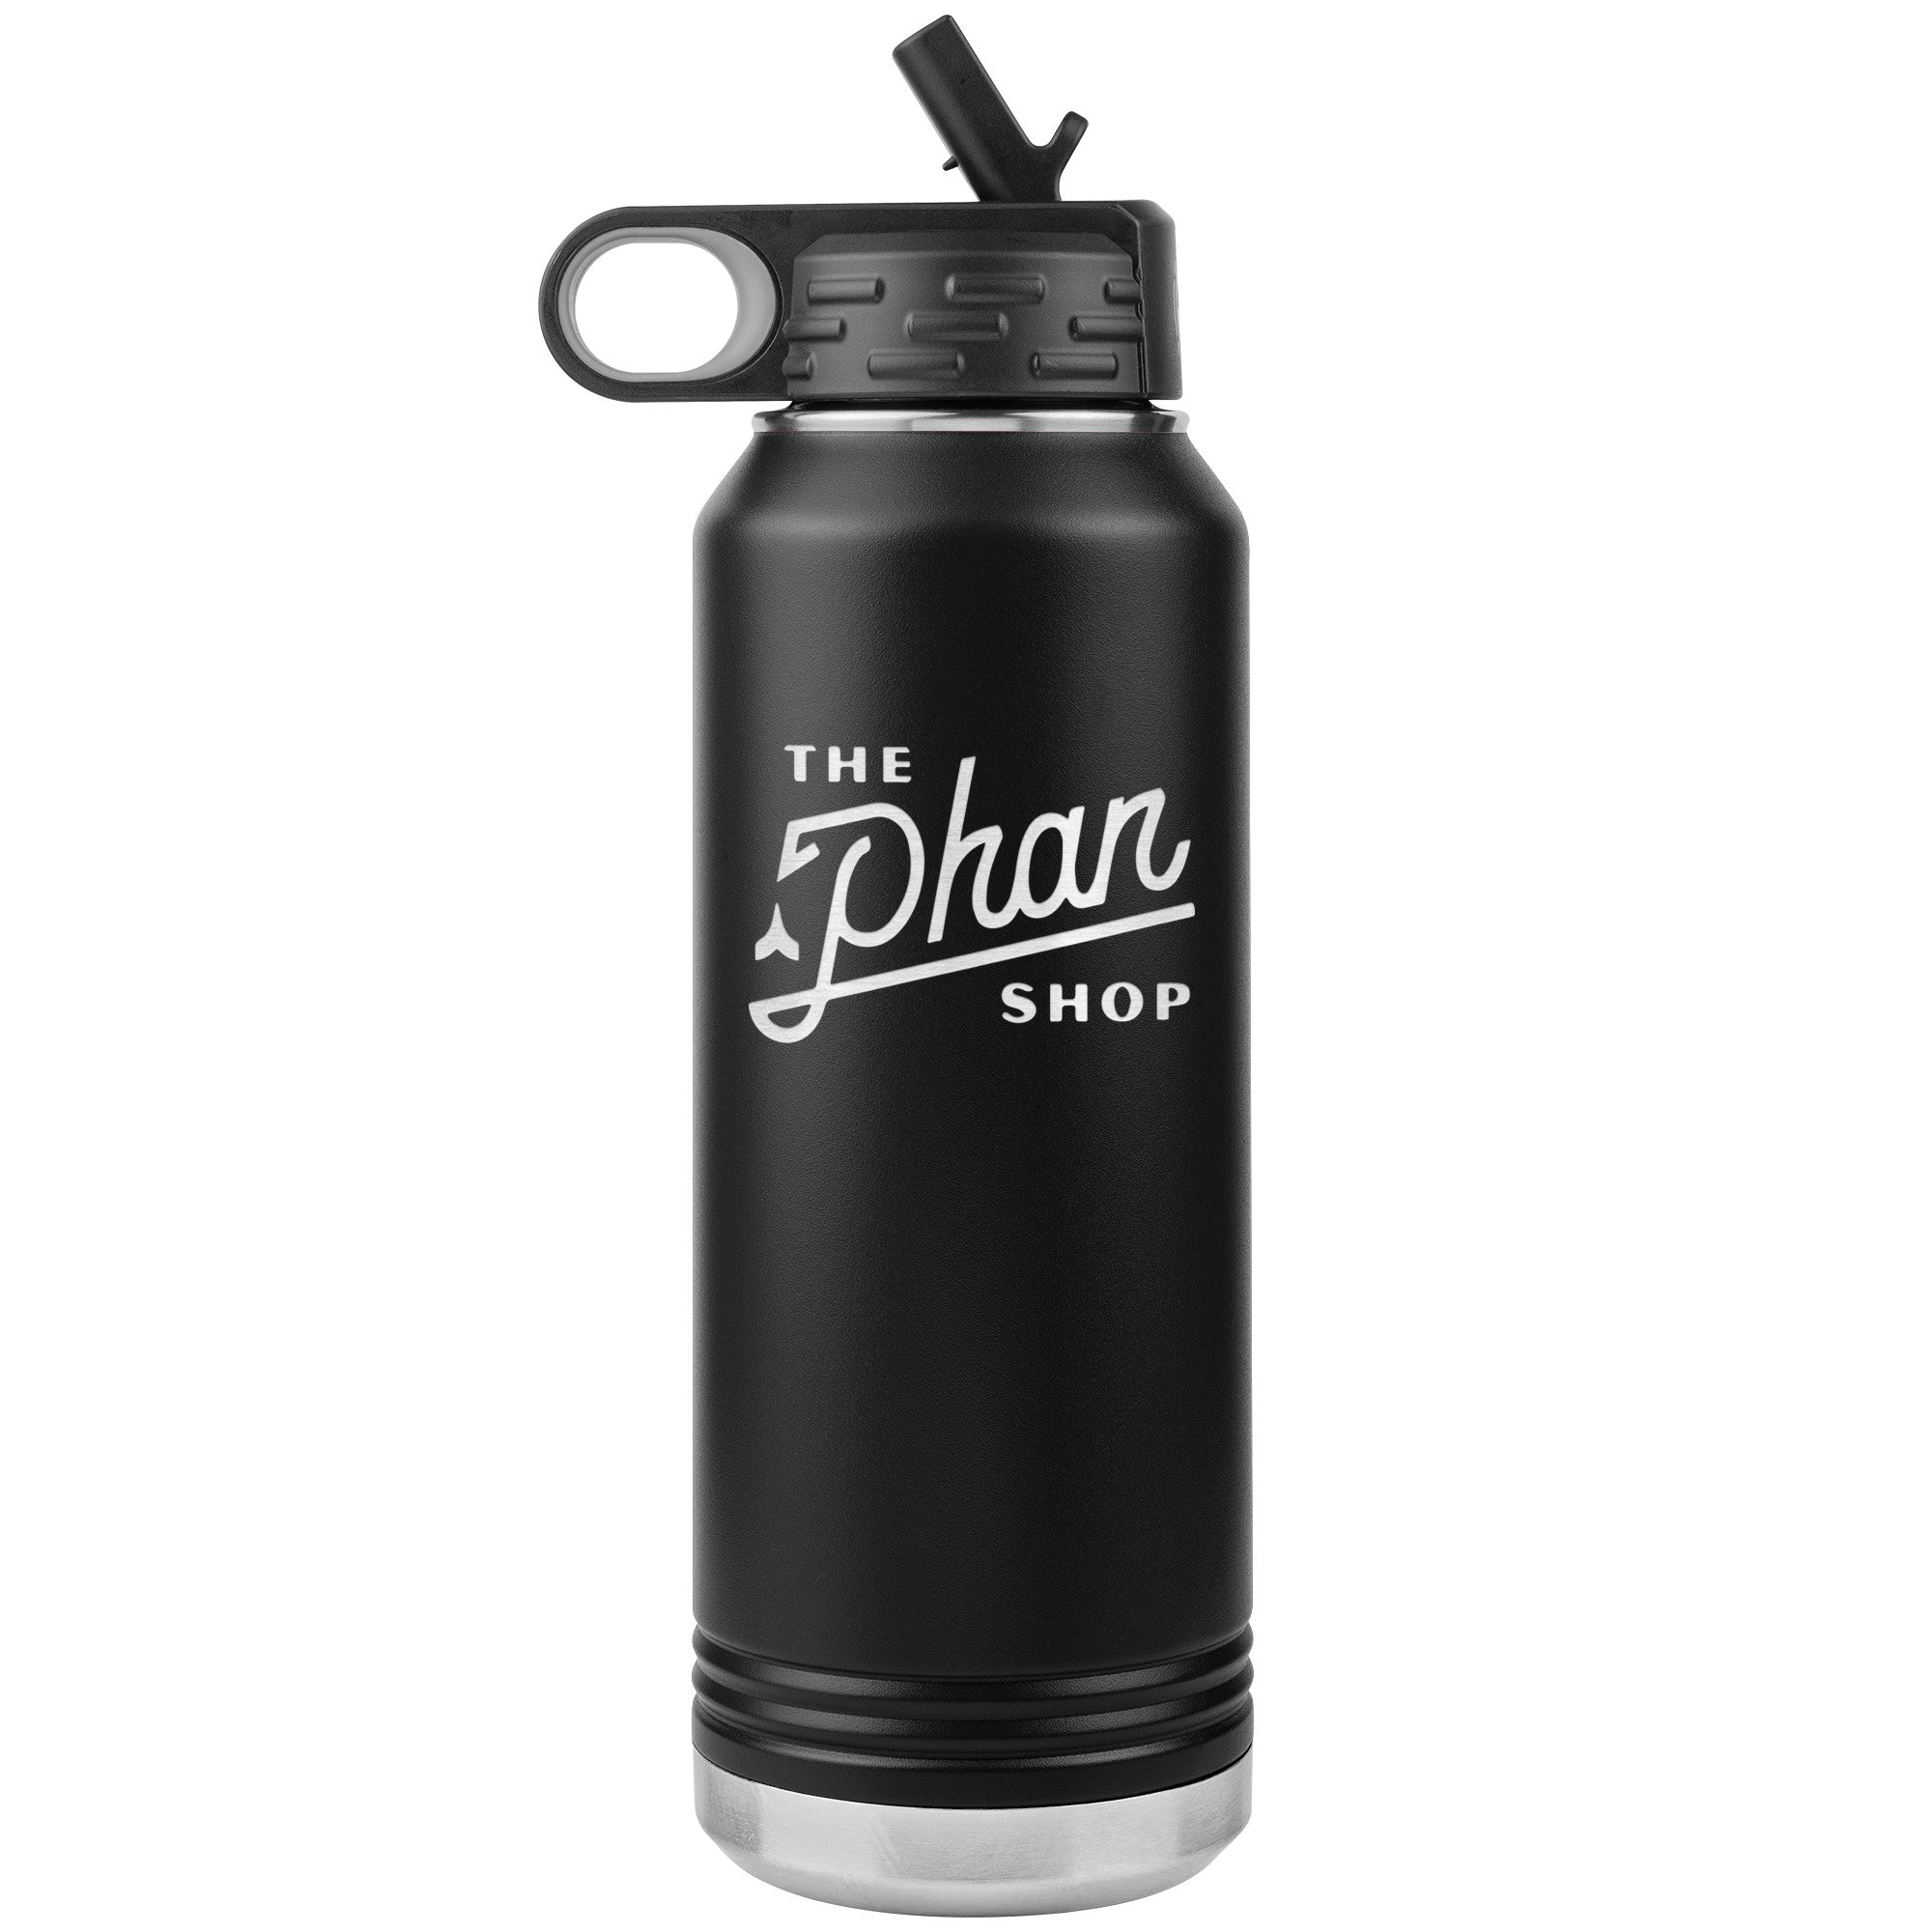 Phan Shop Water Bottle